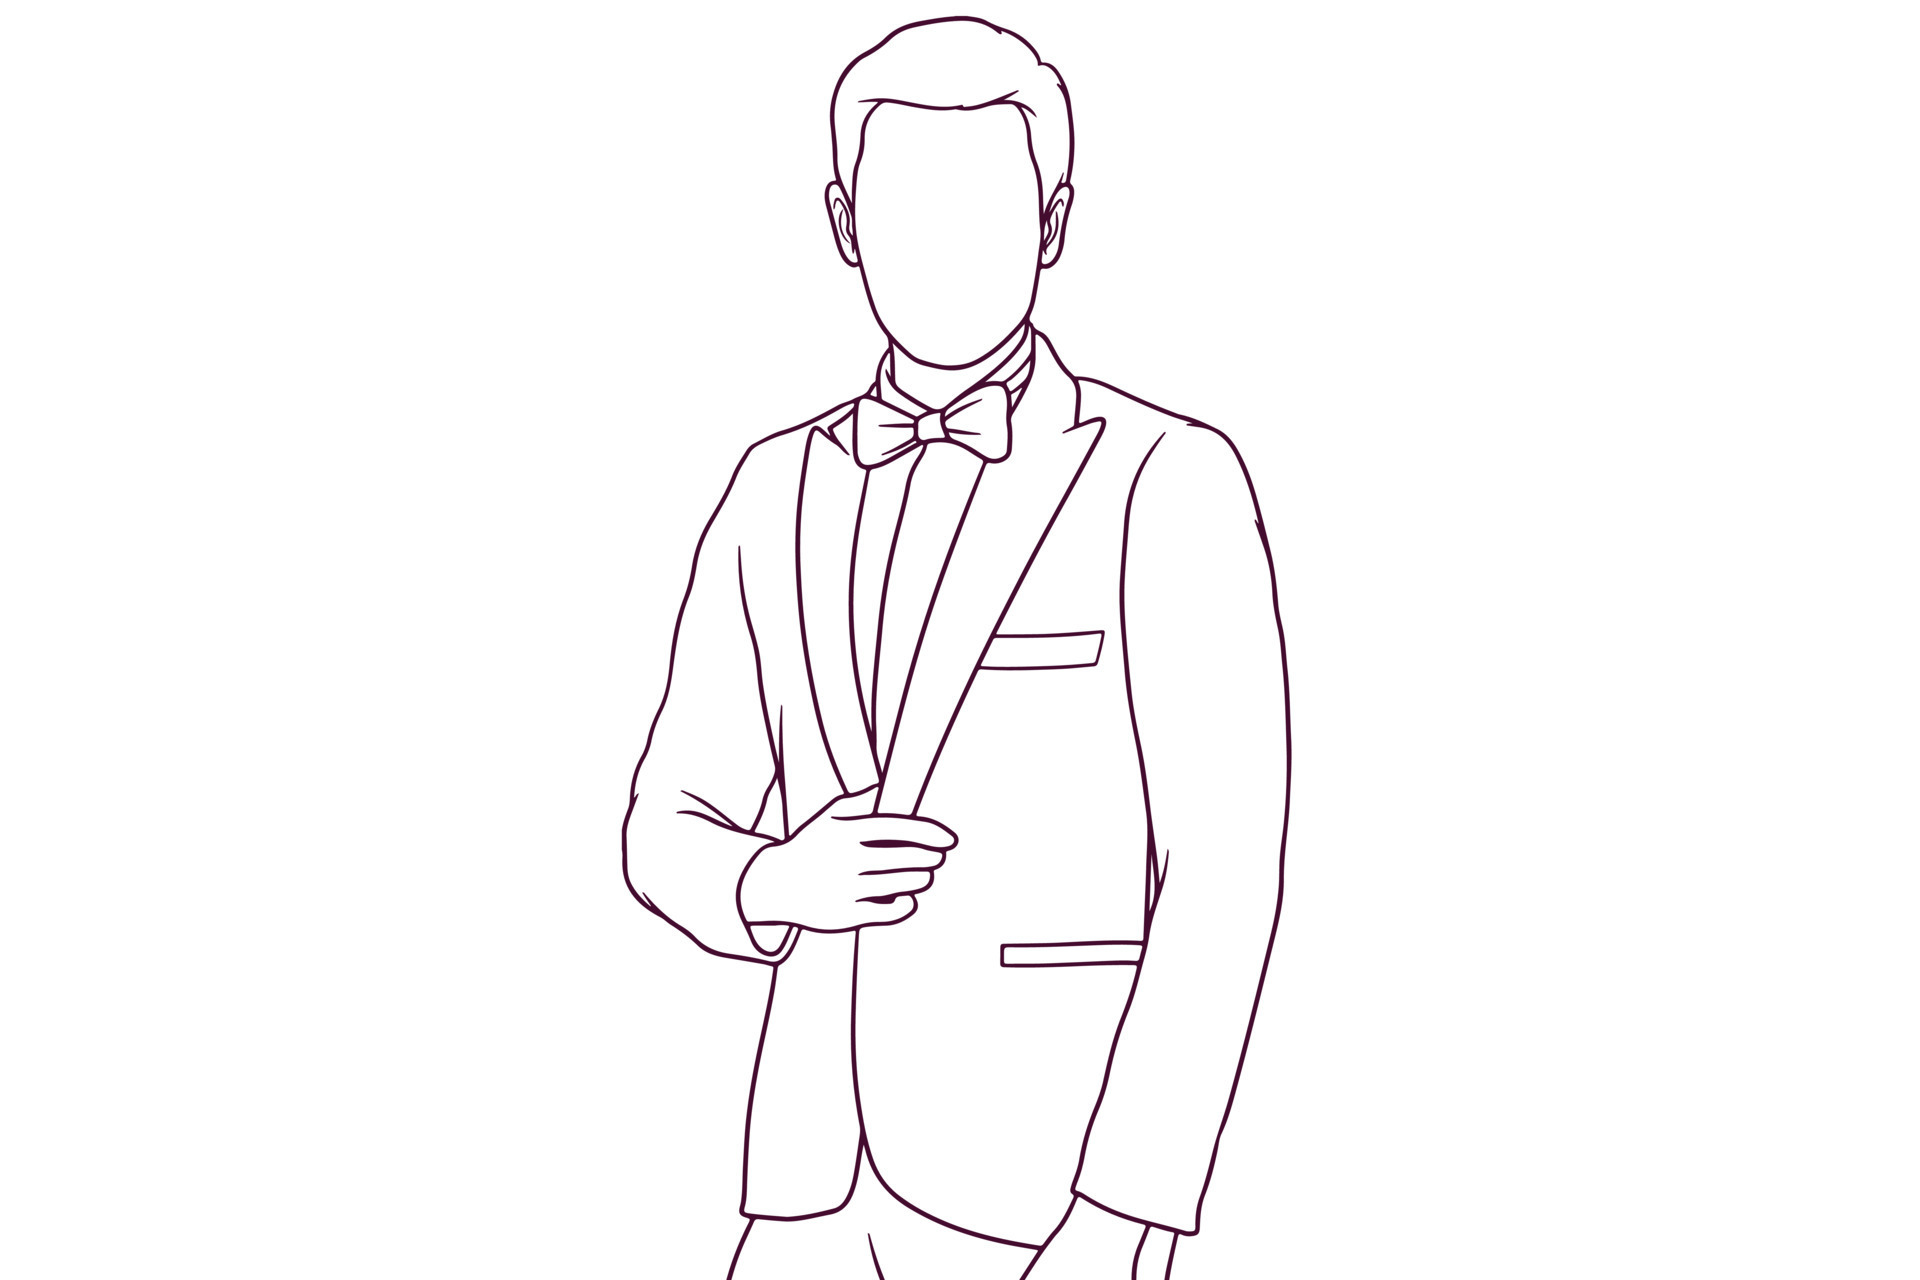 Ilustração vetorial empresário de terno preto e gravata